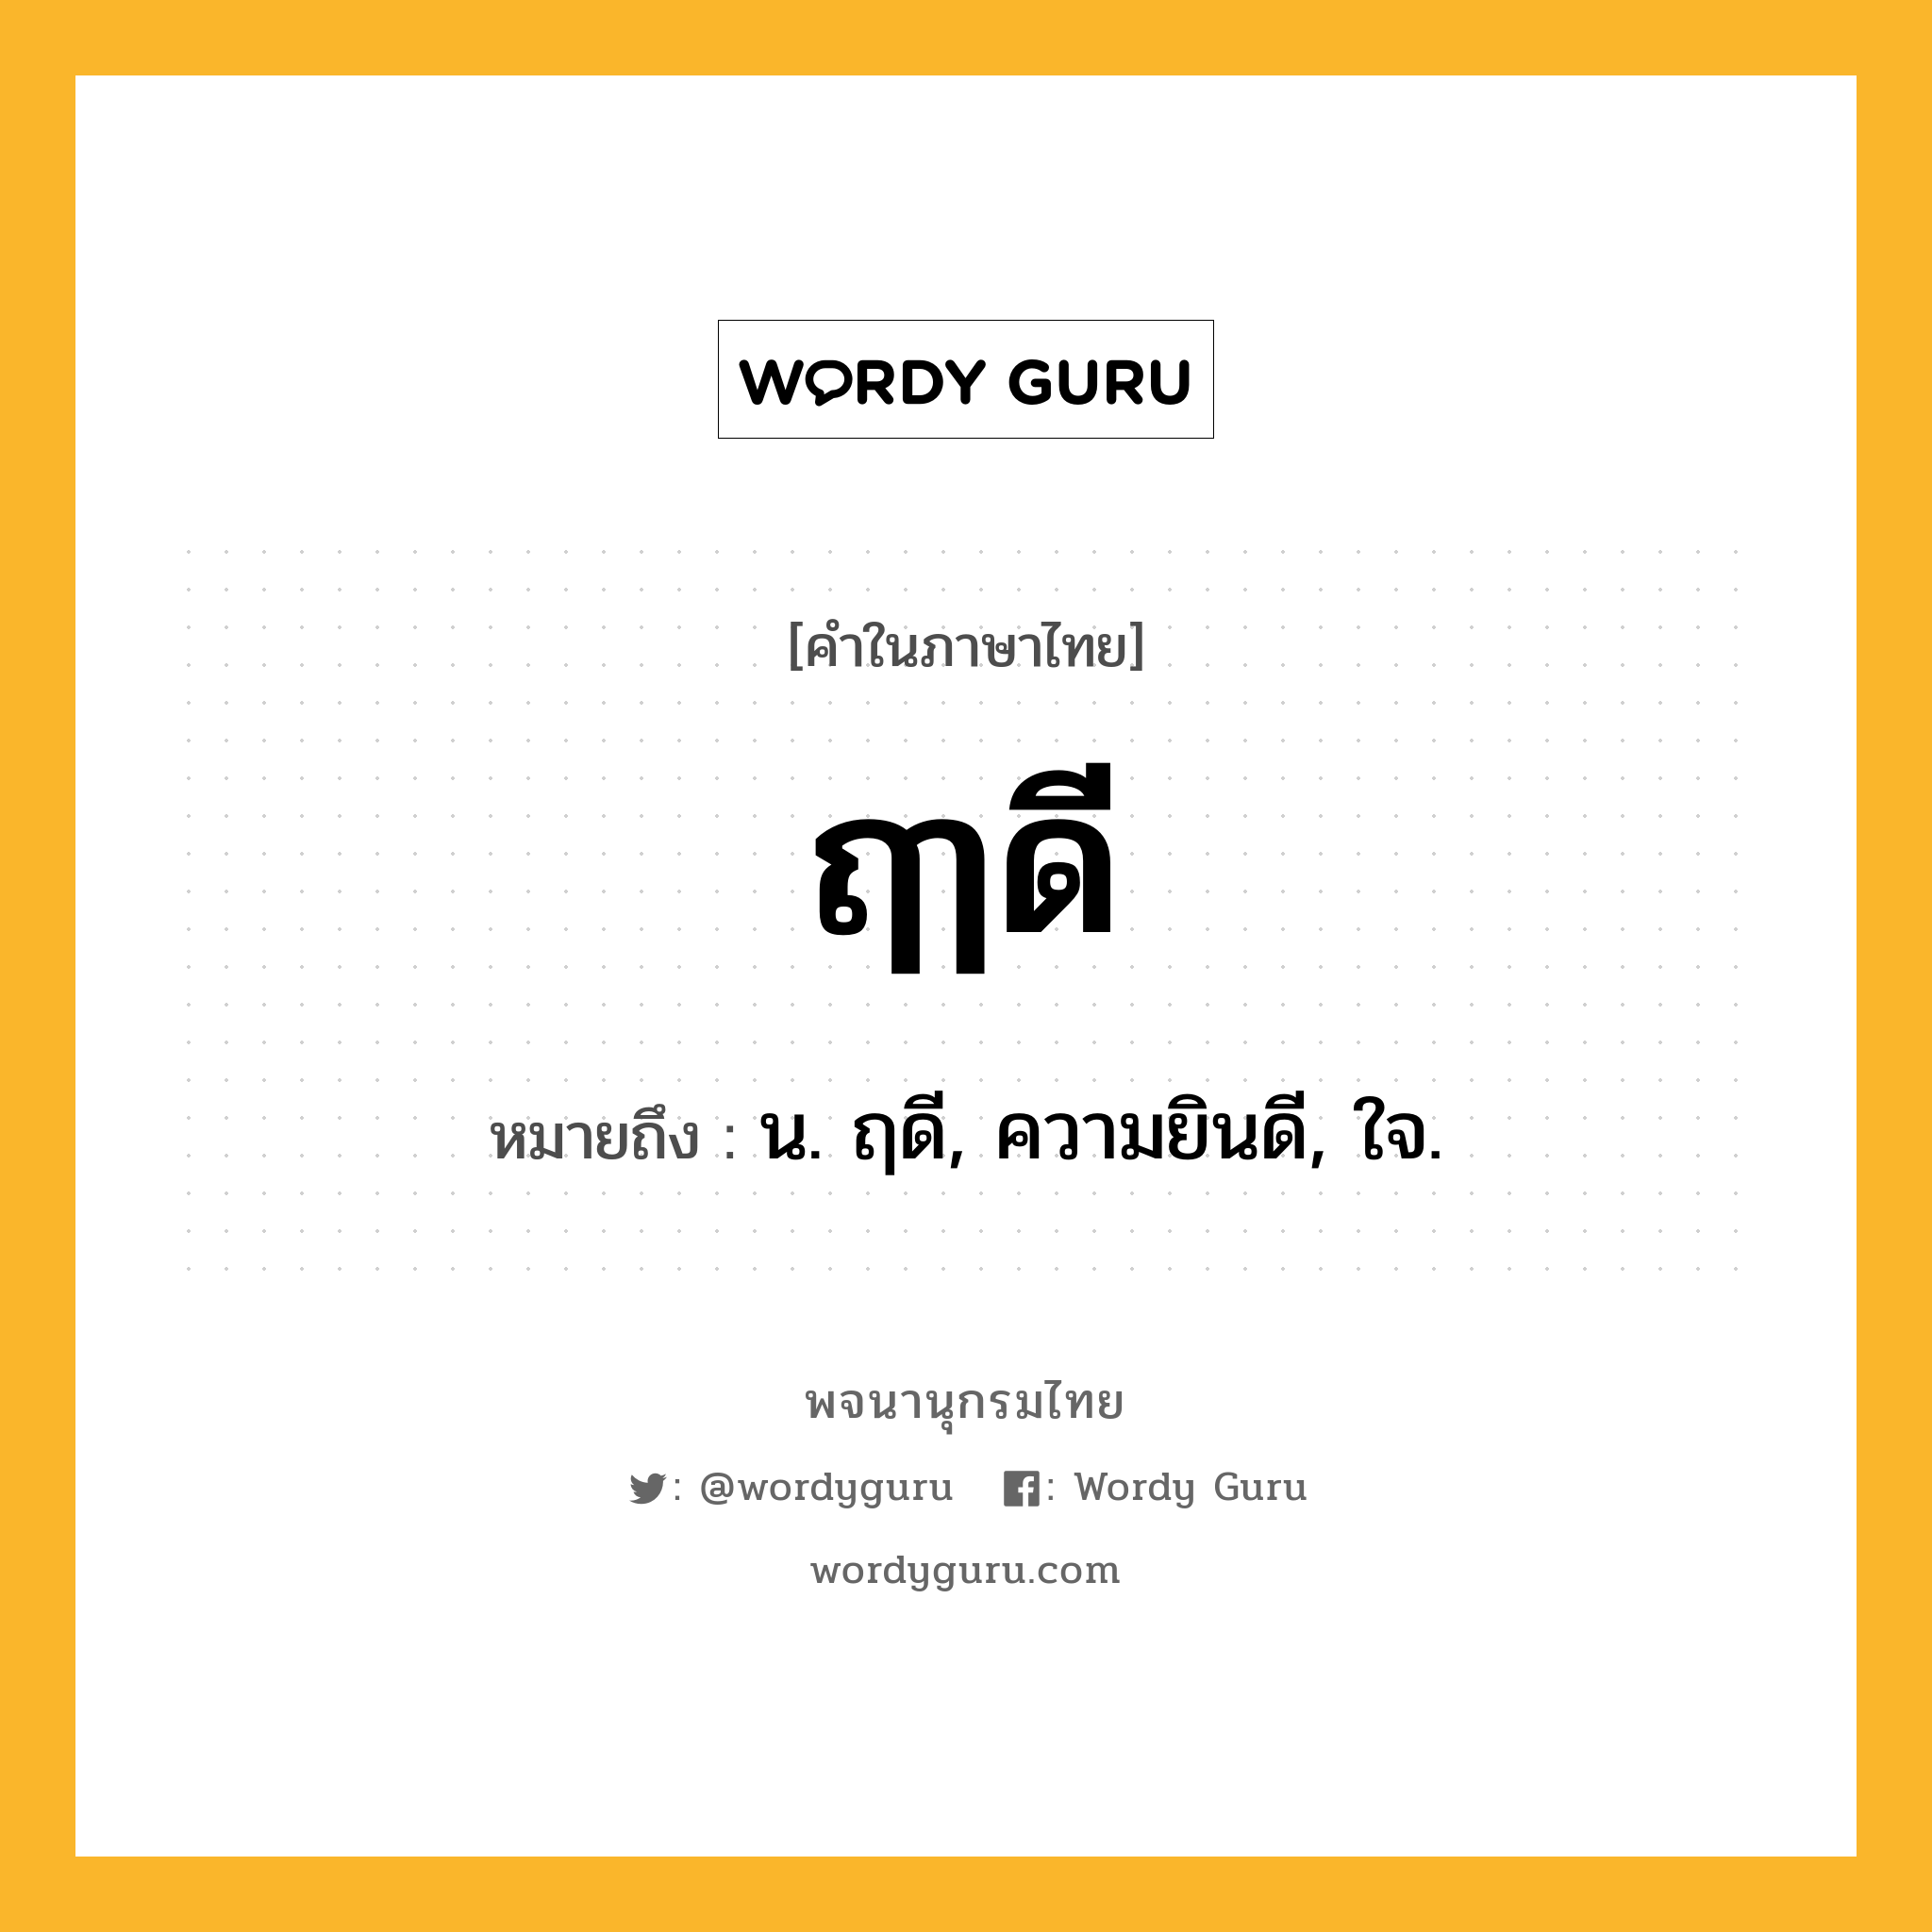 ฤๅดี ความหมาย หมายถึงอะไร?, คำในภาษาไทย ฤๅดี หมายถึง น. ฤดี, ความยินดี, ใจ.